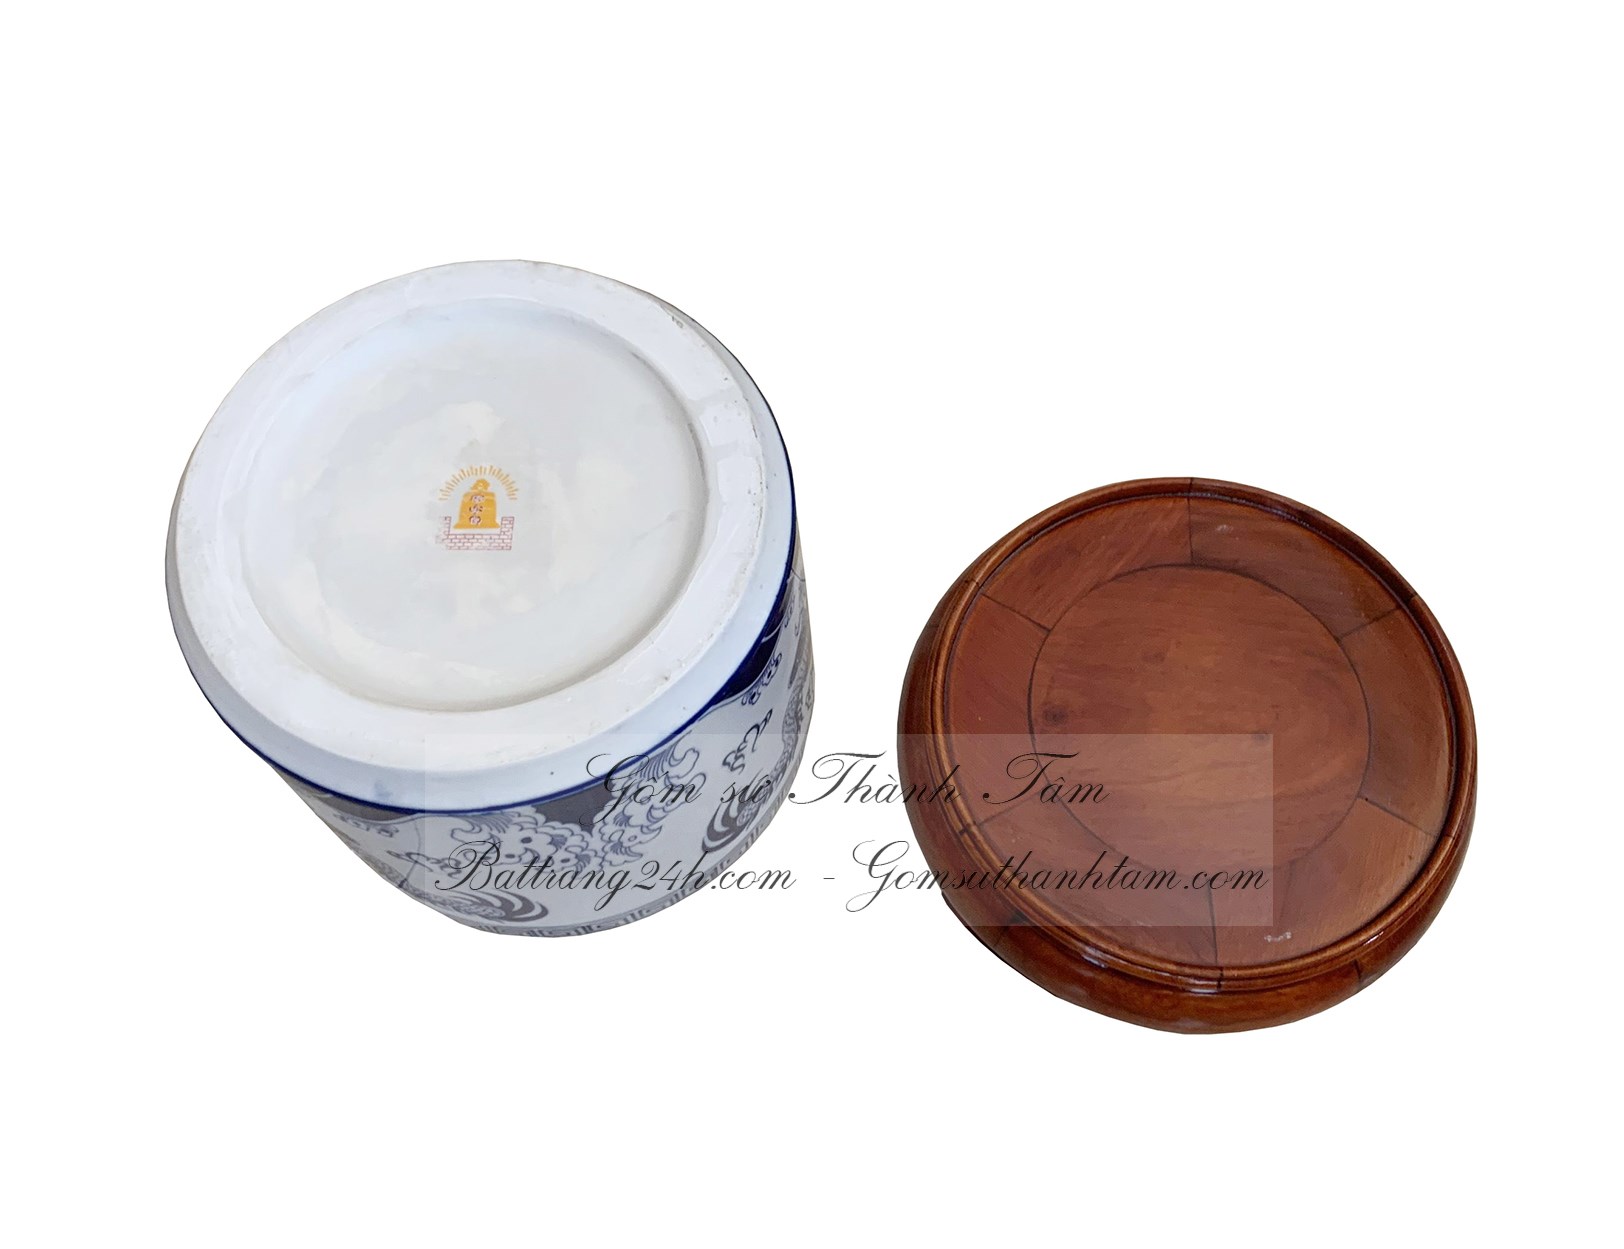 Bát cắm hương thờ cúng bằng gốm sứ Bát Tràng đẹp mắt giá rẻ, bát cắm hương chất lượng tốt nhất